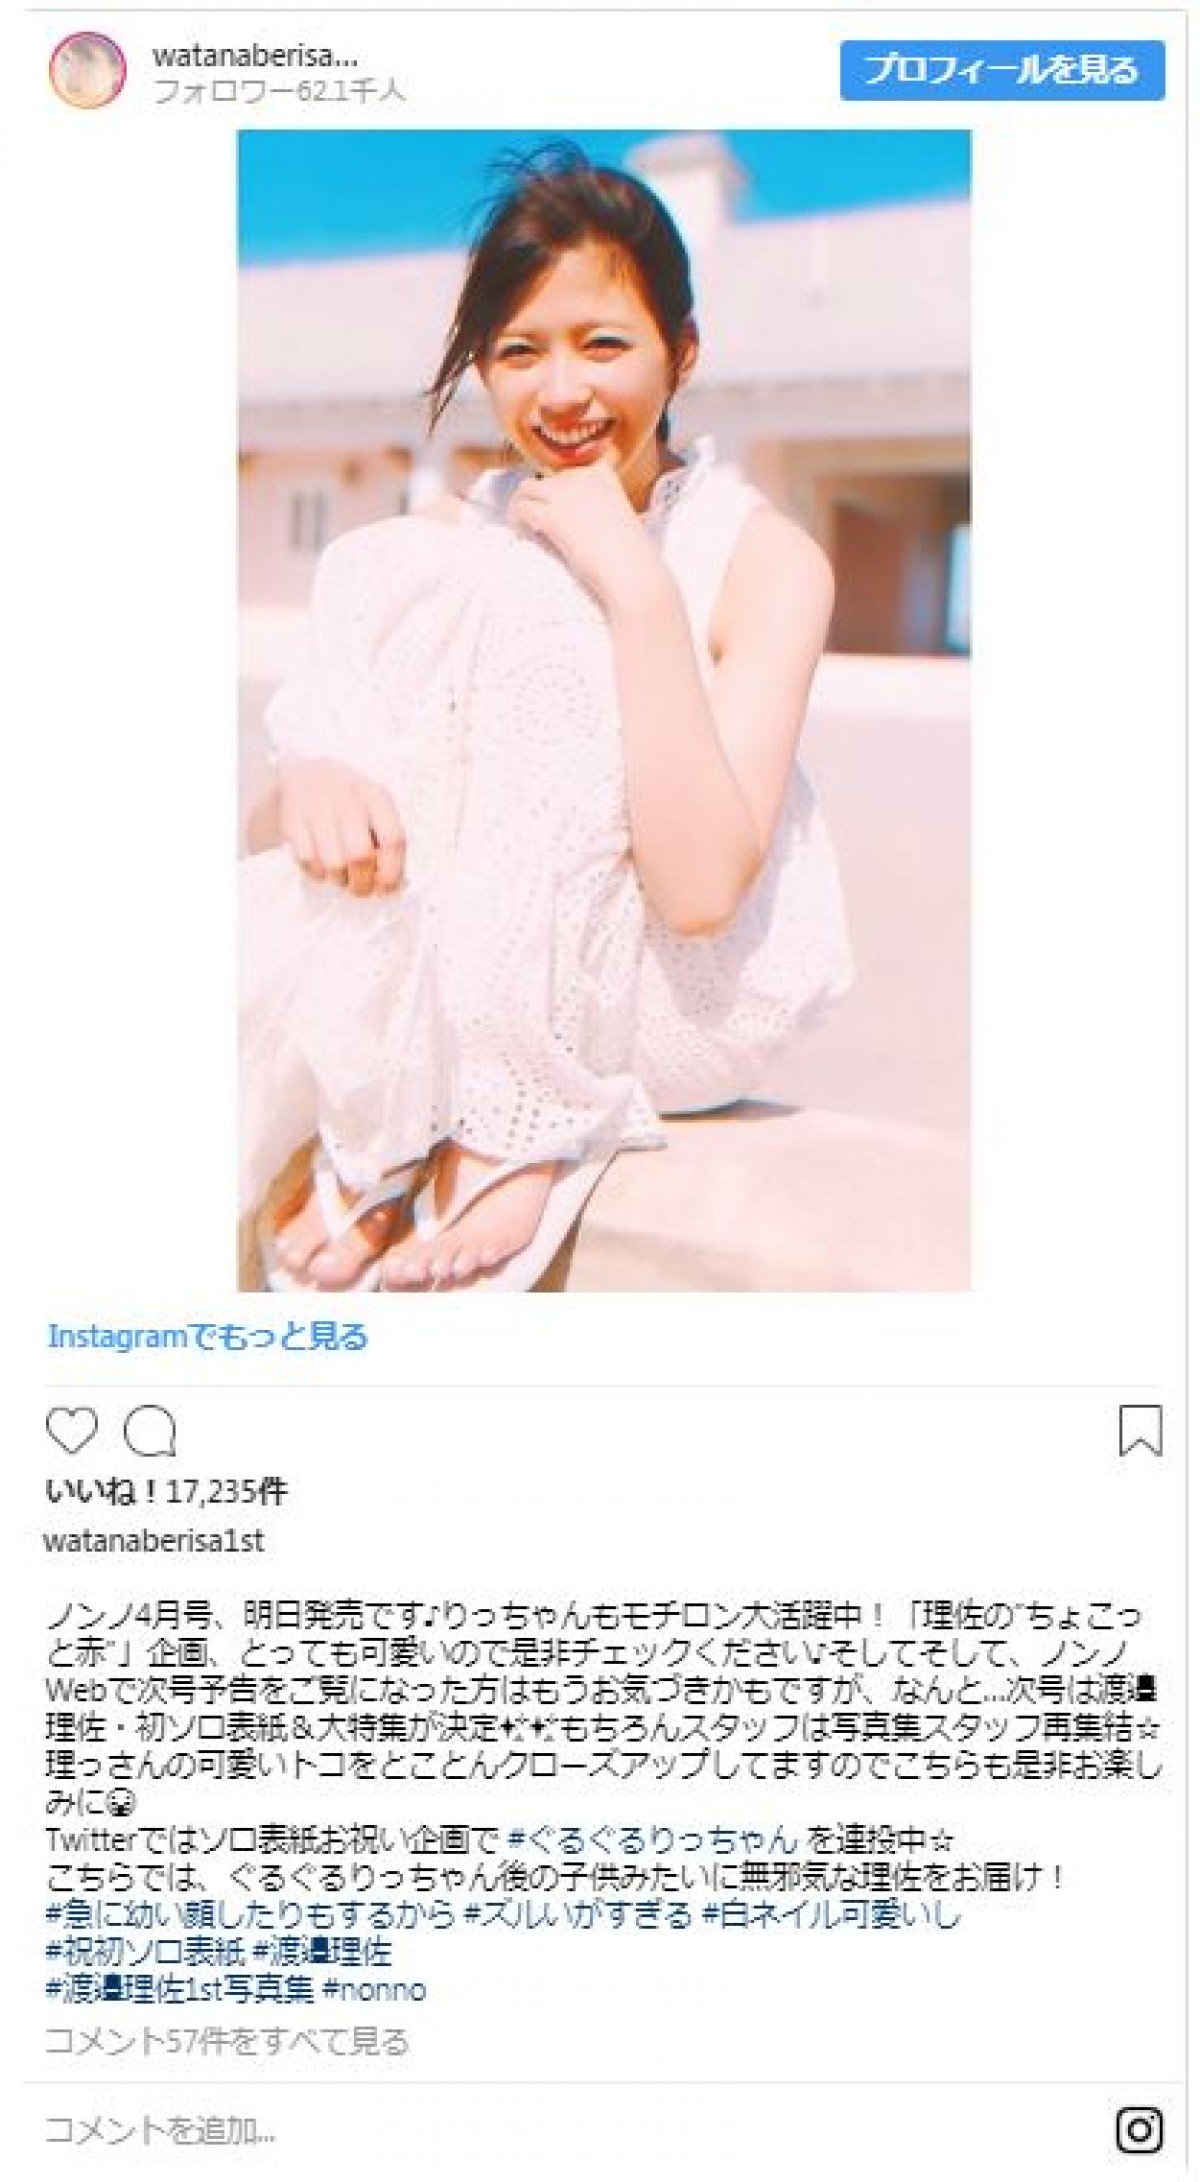 欅坂46・渡邉理佐の“もぐもぐショット”に歓喜の声「かわいすぎ」